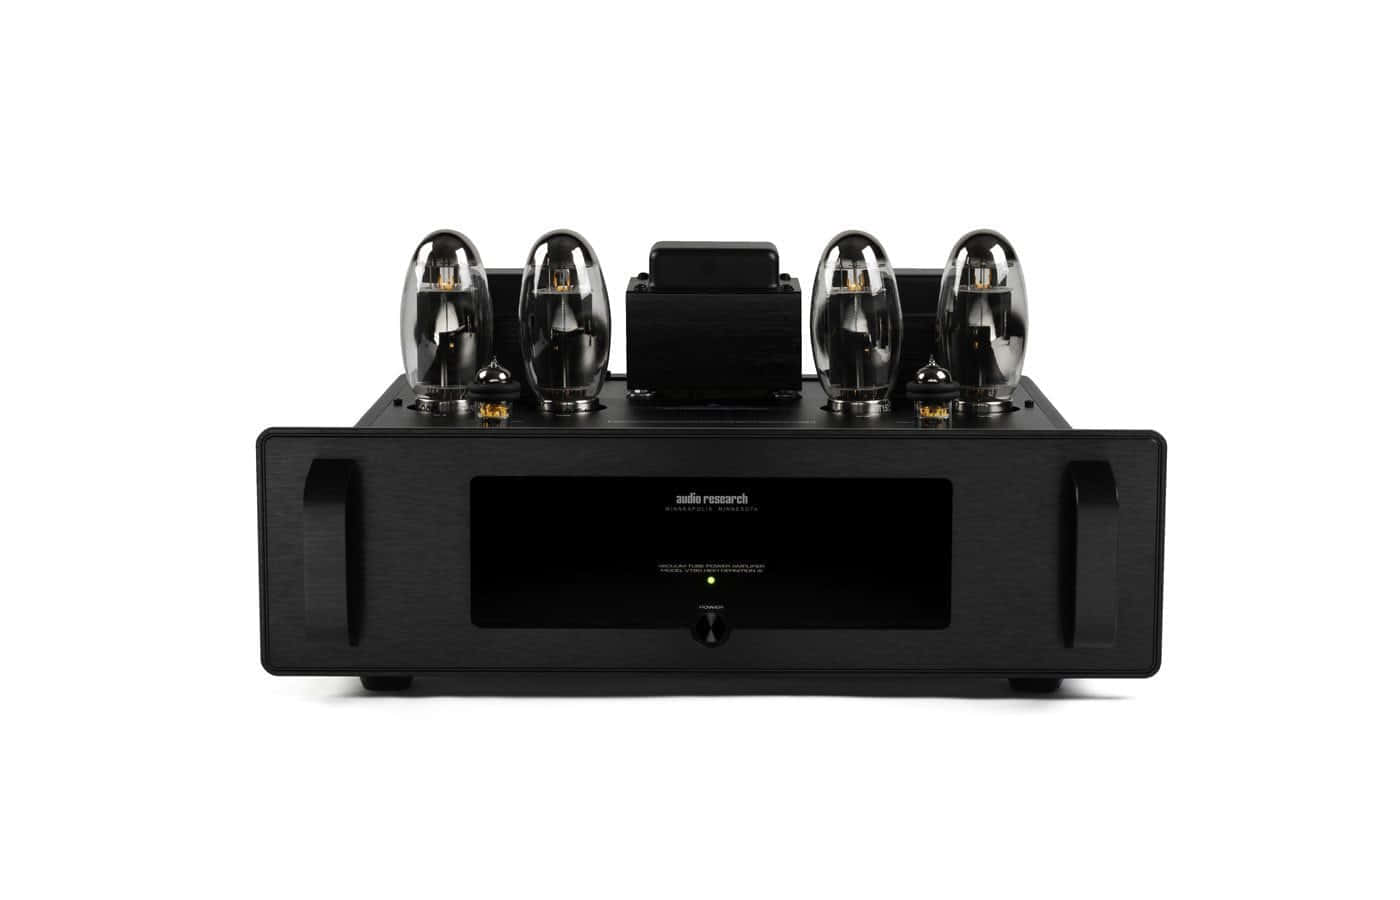 Усилители мощности Audio Research VT80SE Black усилители мощности audio research vt80se silver